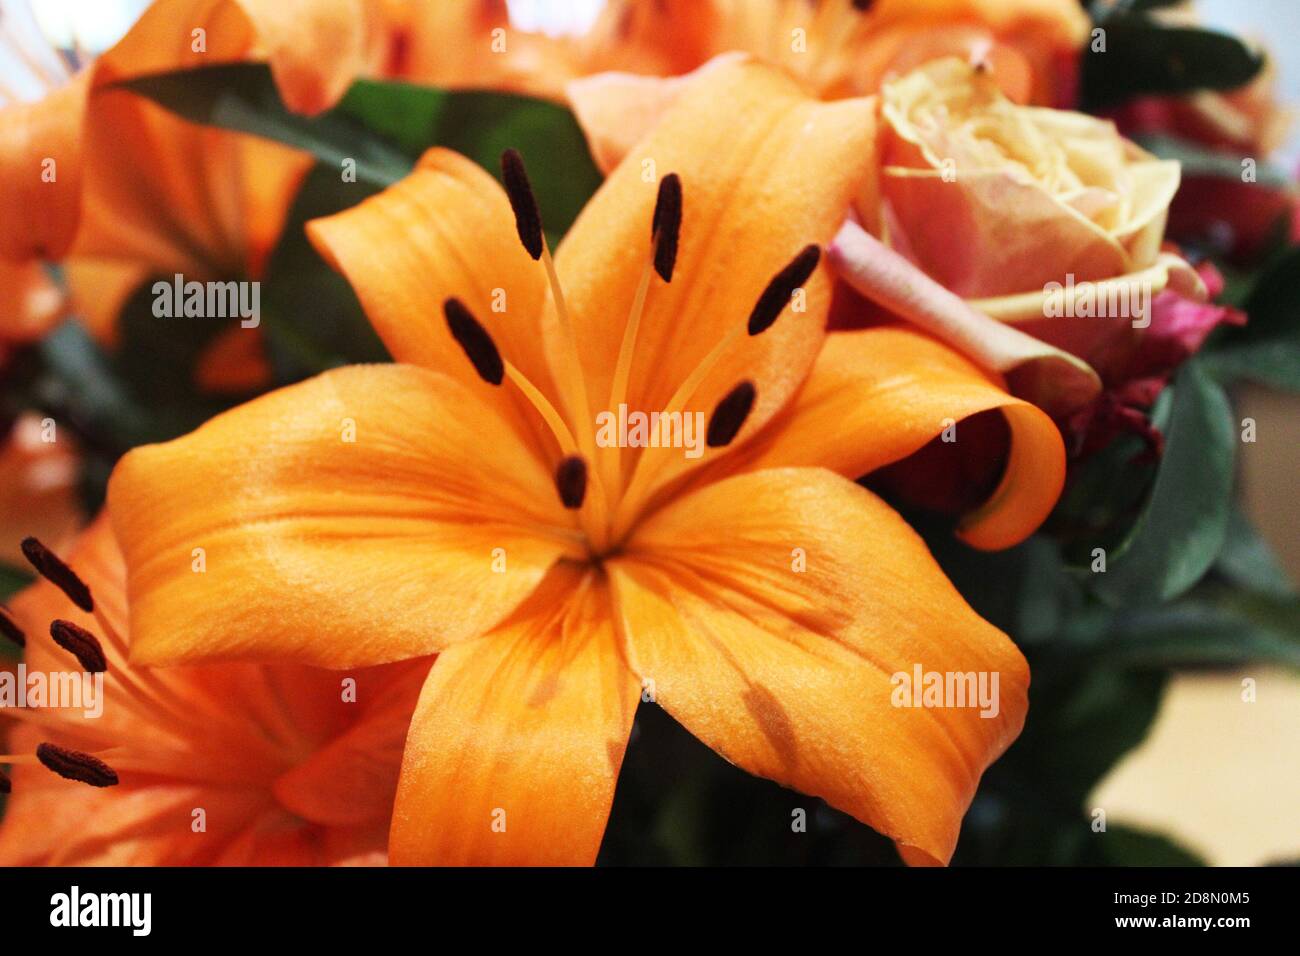 Gros plan sur le nénuphars roi d'Orange County (Lilium) dans un bouquet/bouquet de fleurs d'orange Banque D'Images